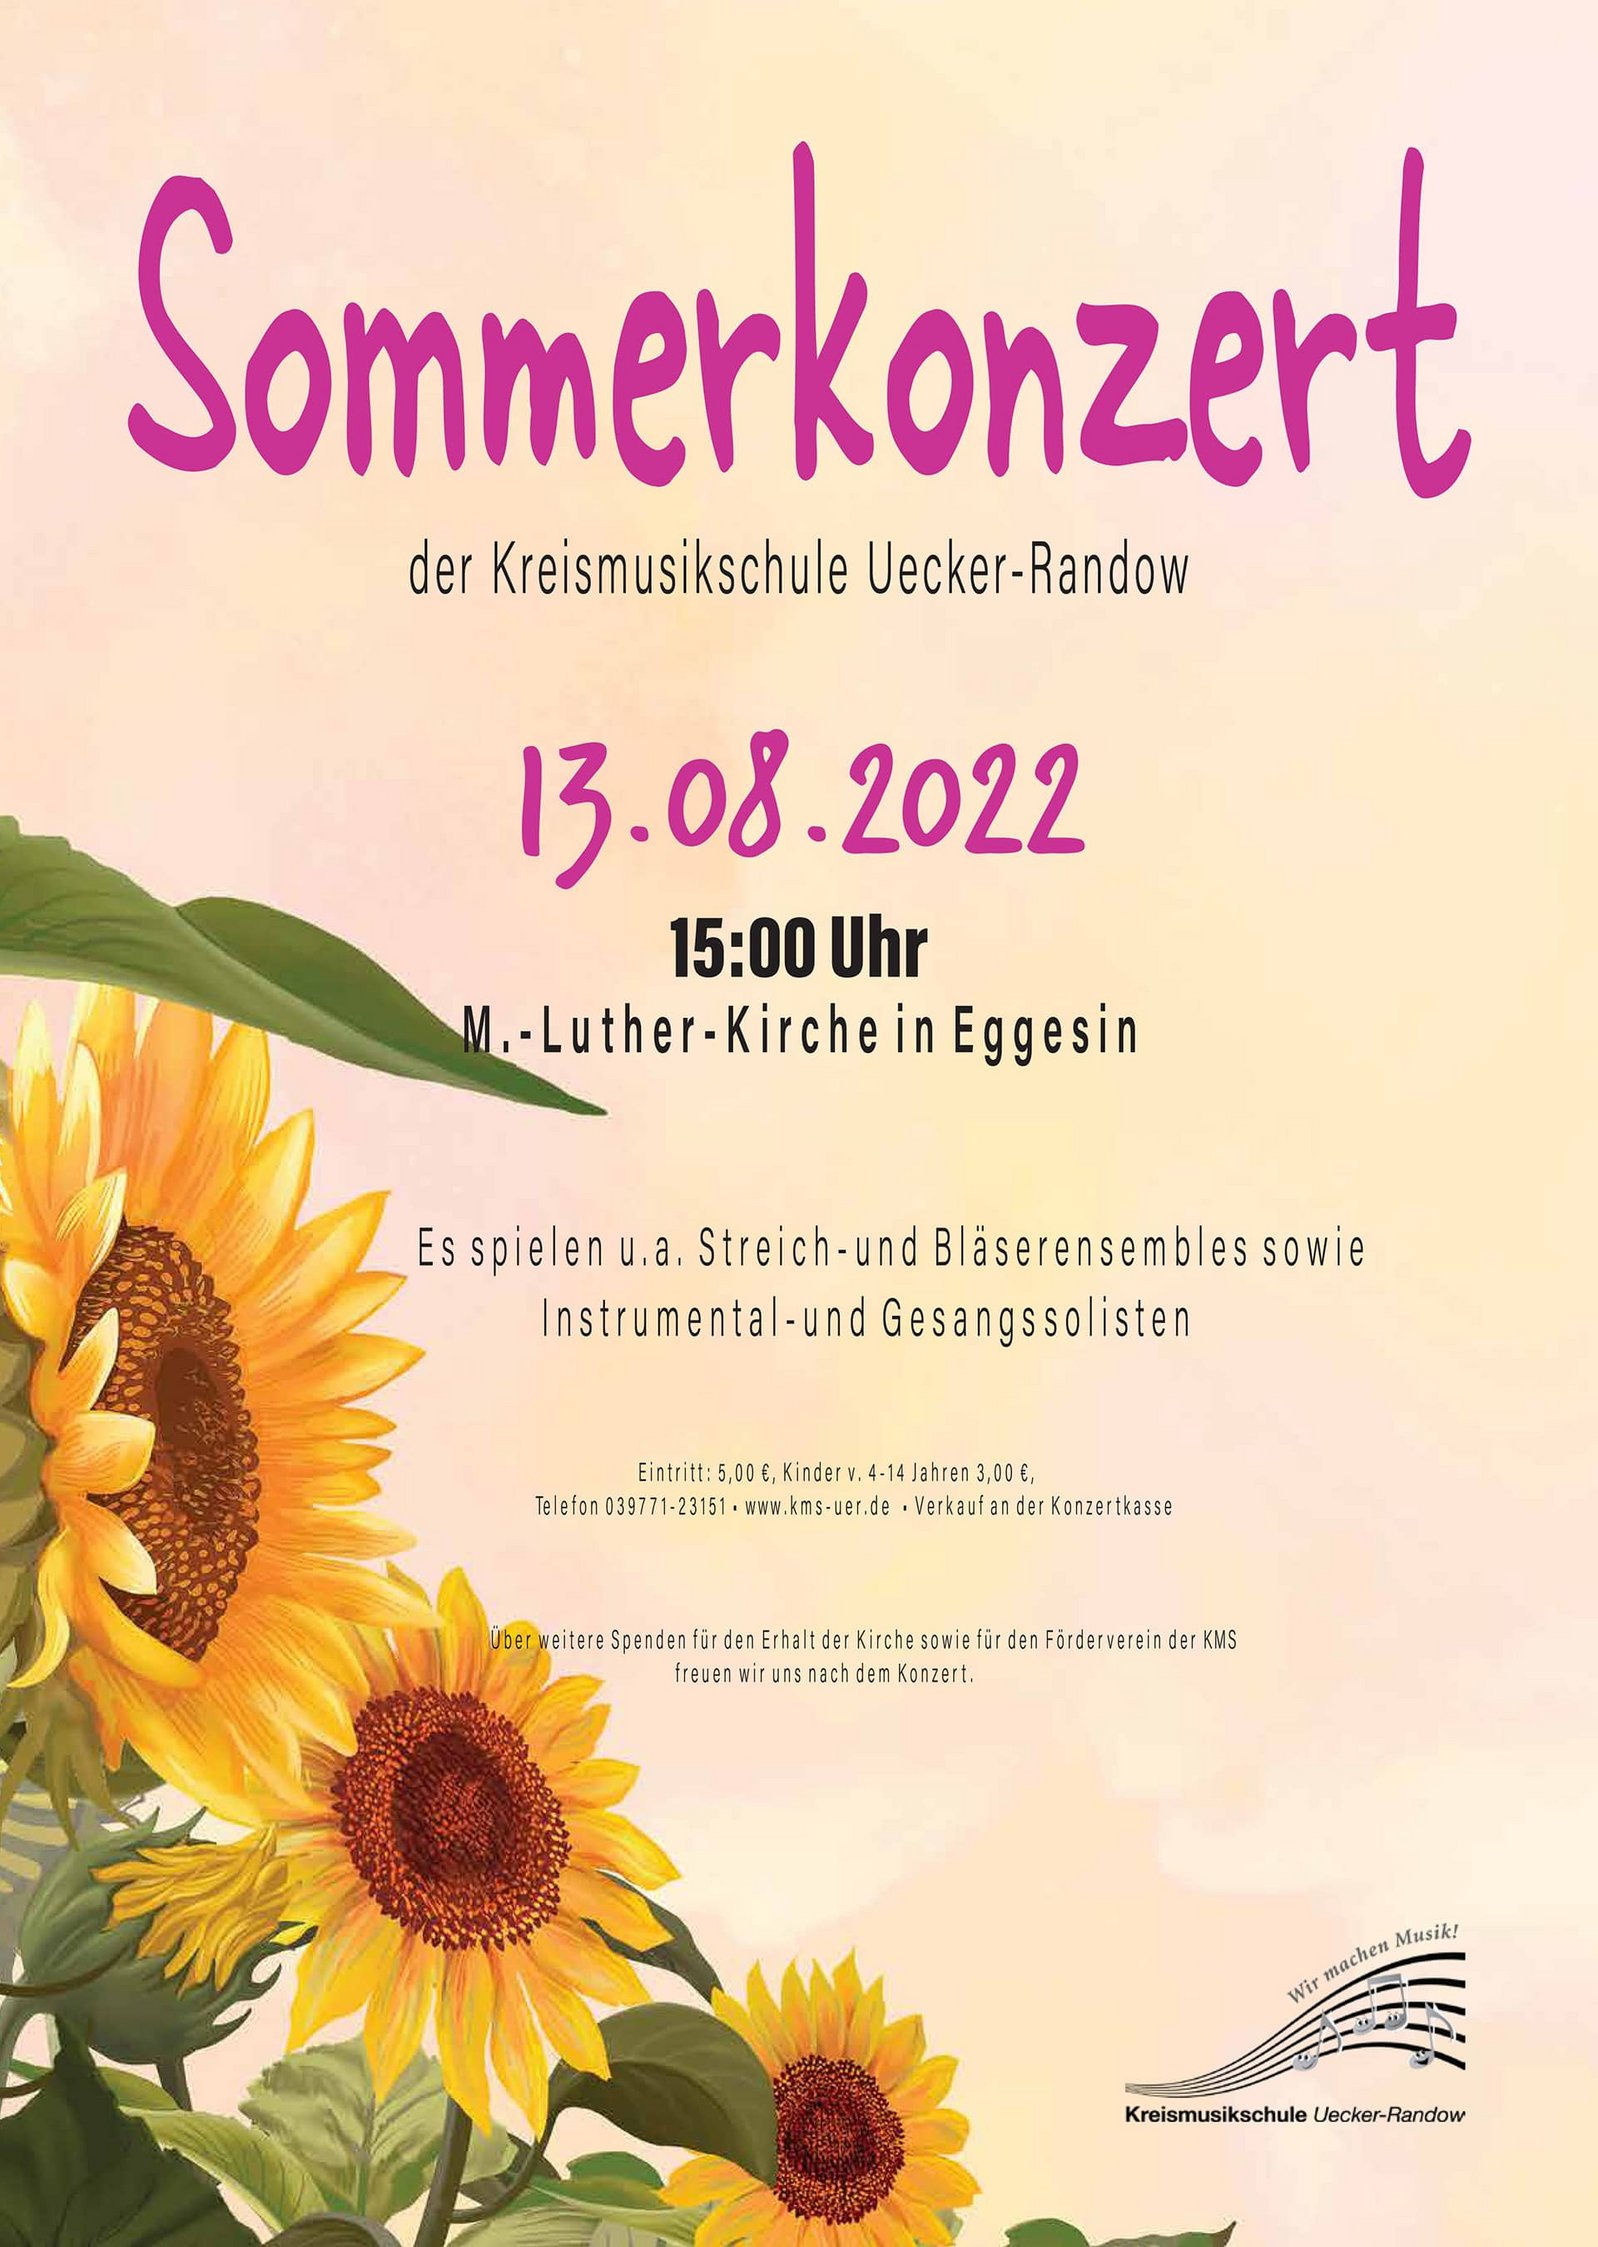 Sommerkonzert in der Martin-Luther-Kirche Eggesin